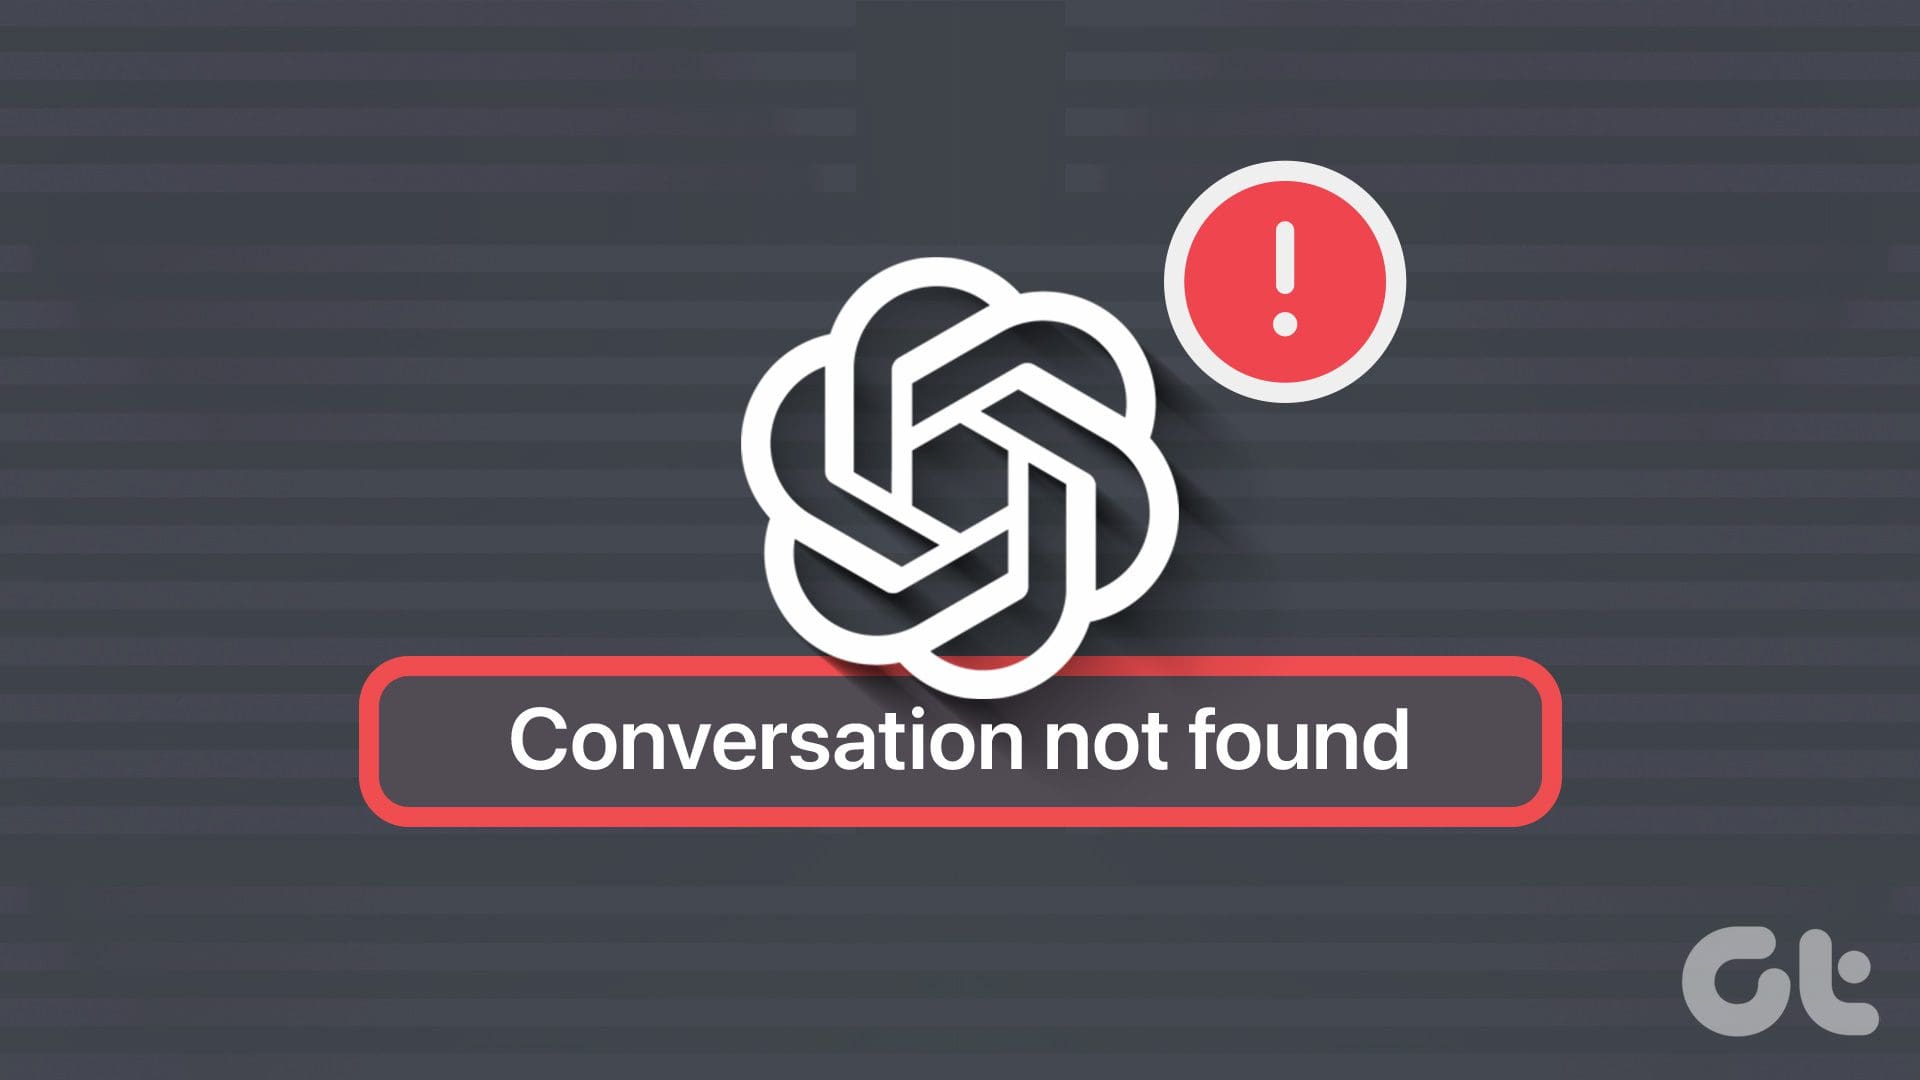 ثابت "مکالمه پیدا نشد" خطا در ChatGPT